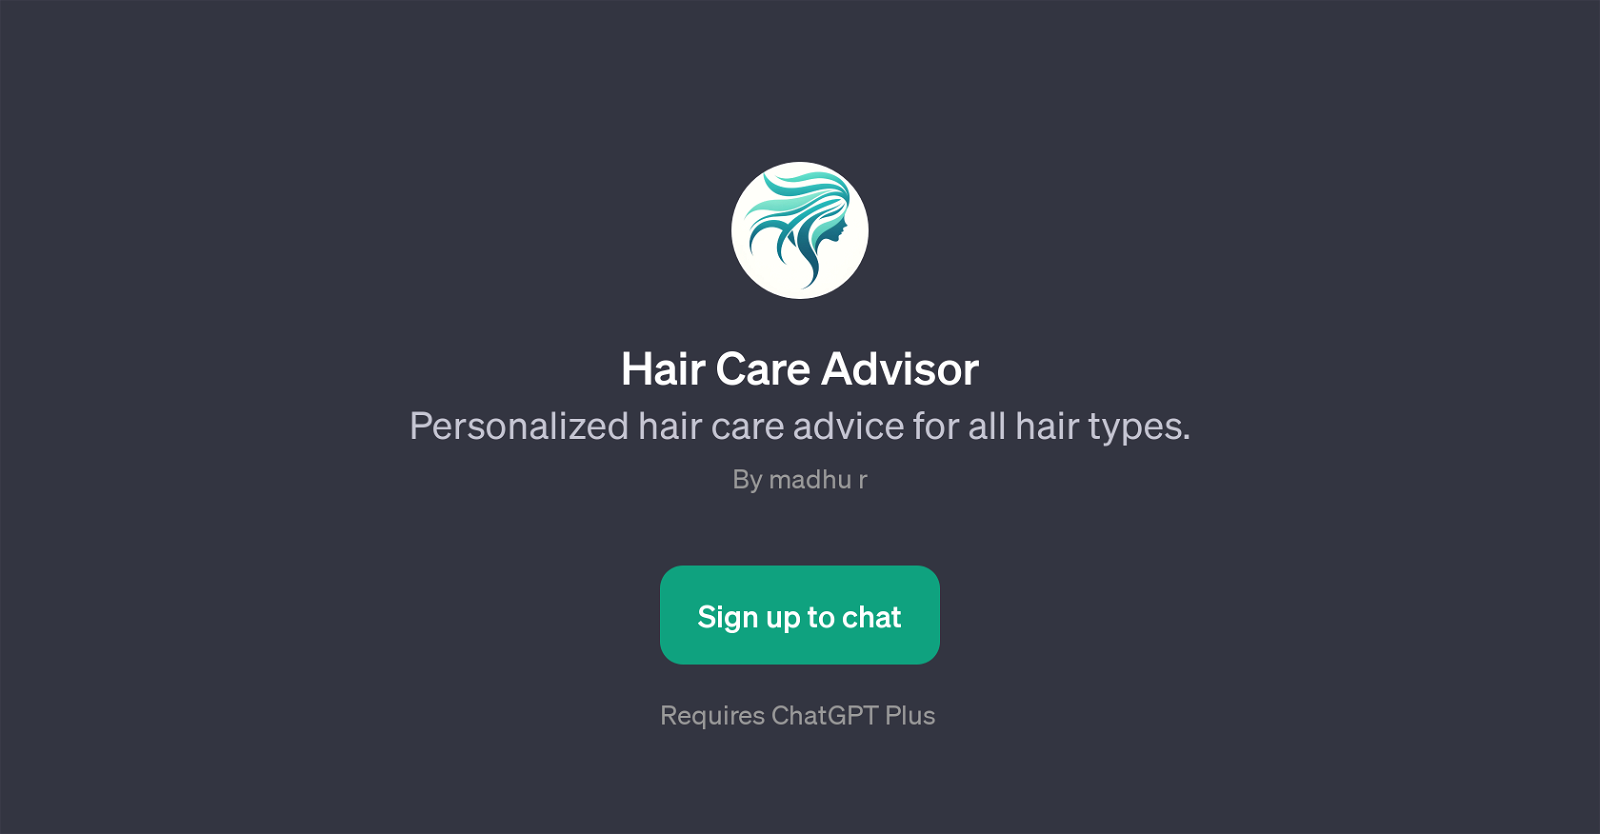 Hair Care Advisor website